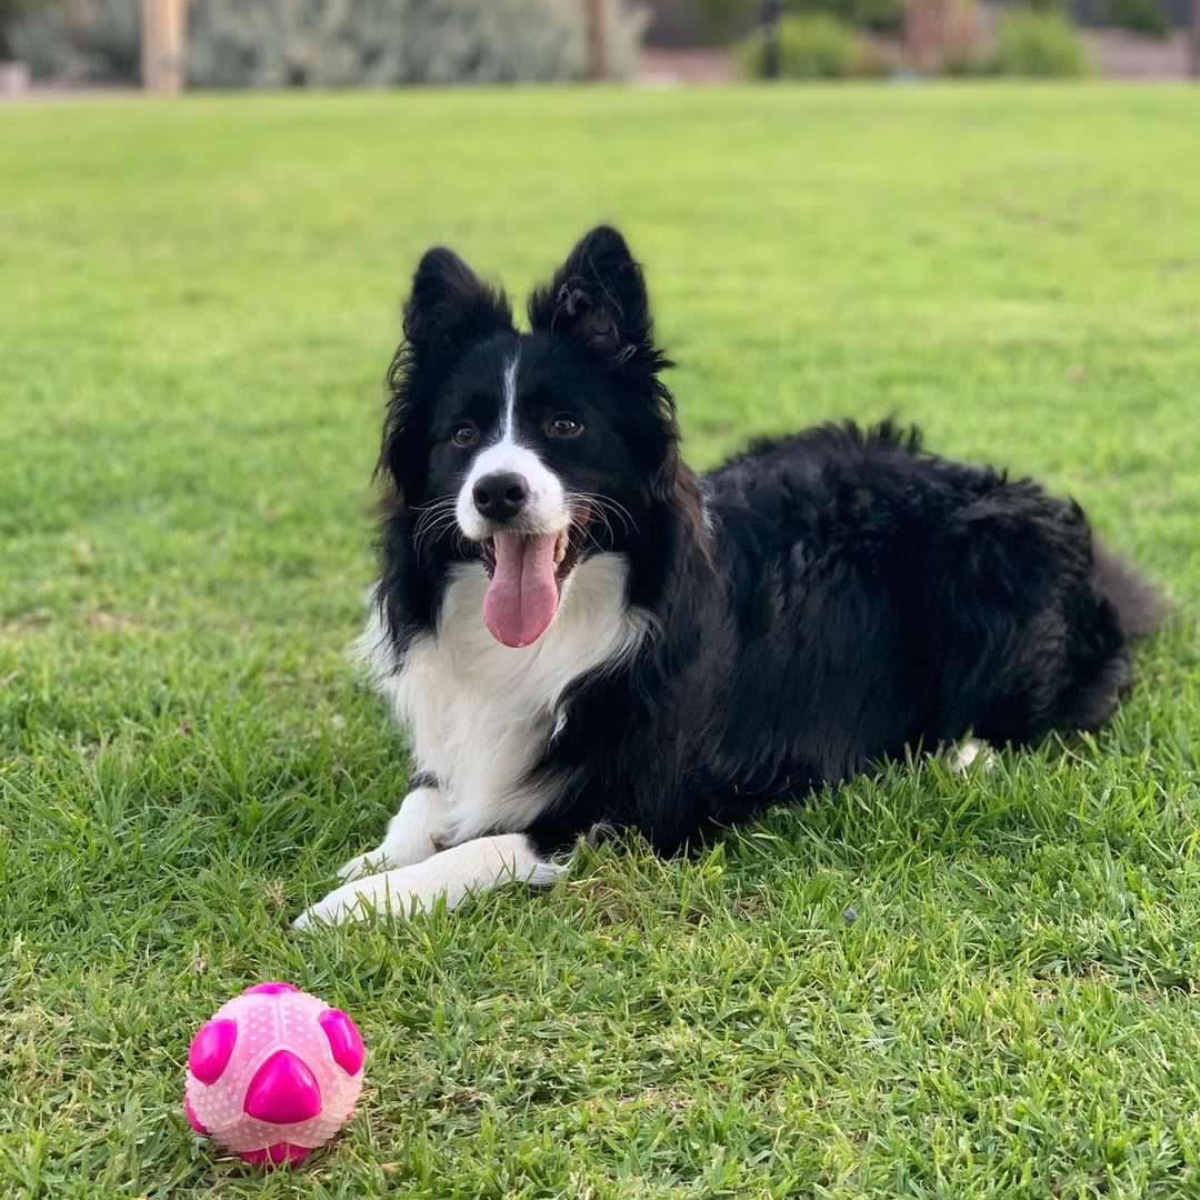 Best dog ball